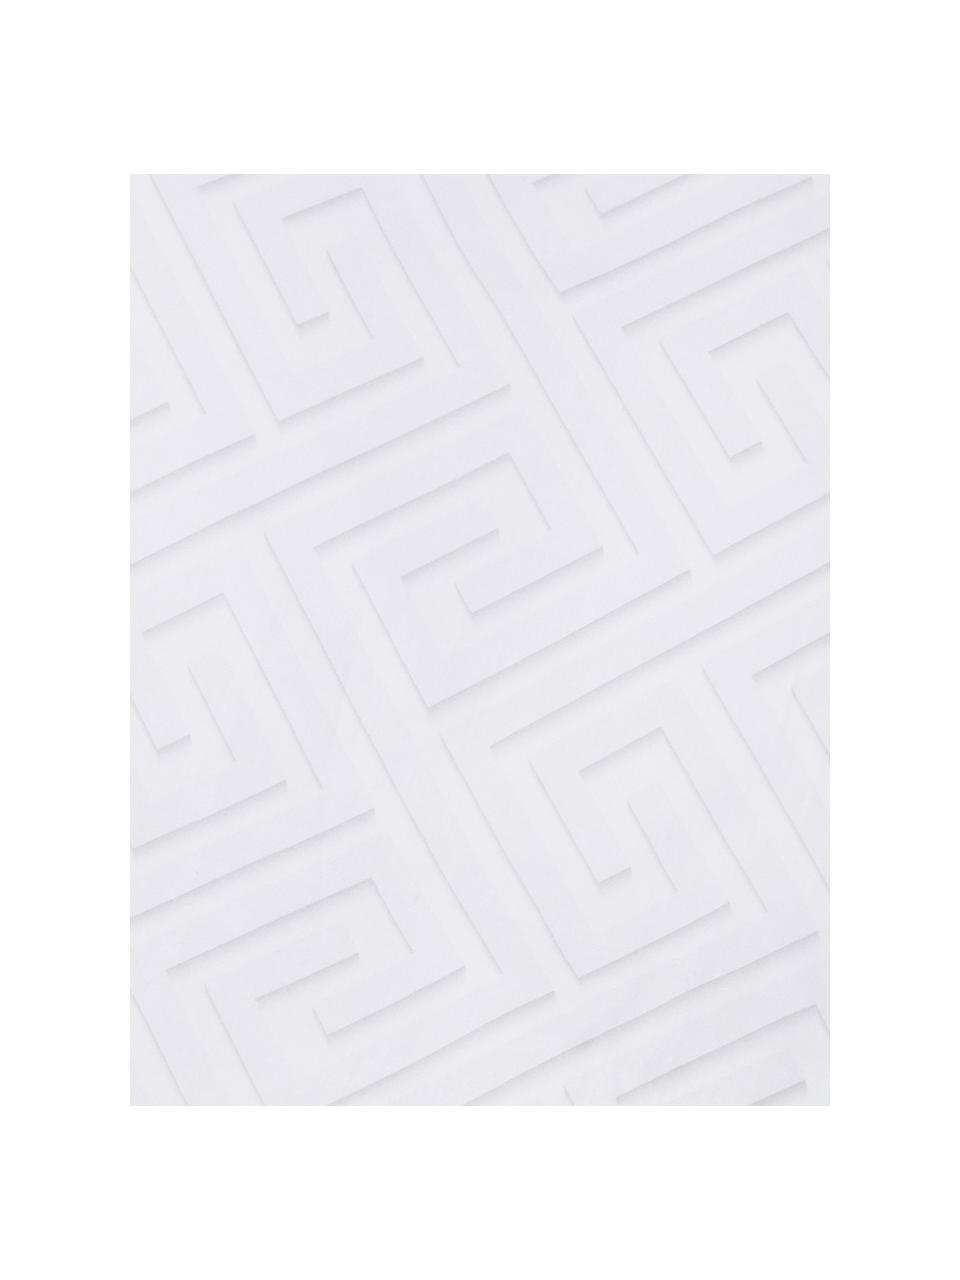 Funda nórdica doble cara de satén Atina, Blanco, gris claro, Cama 180/200 cm (260 x 220 cm)